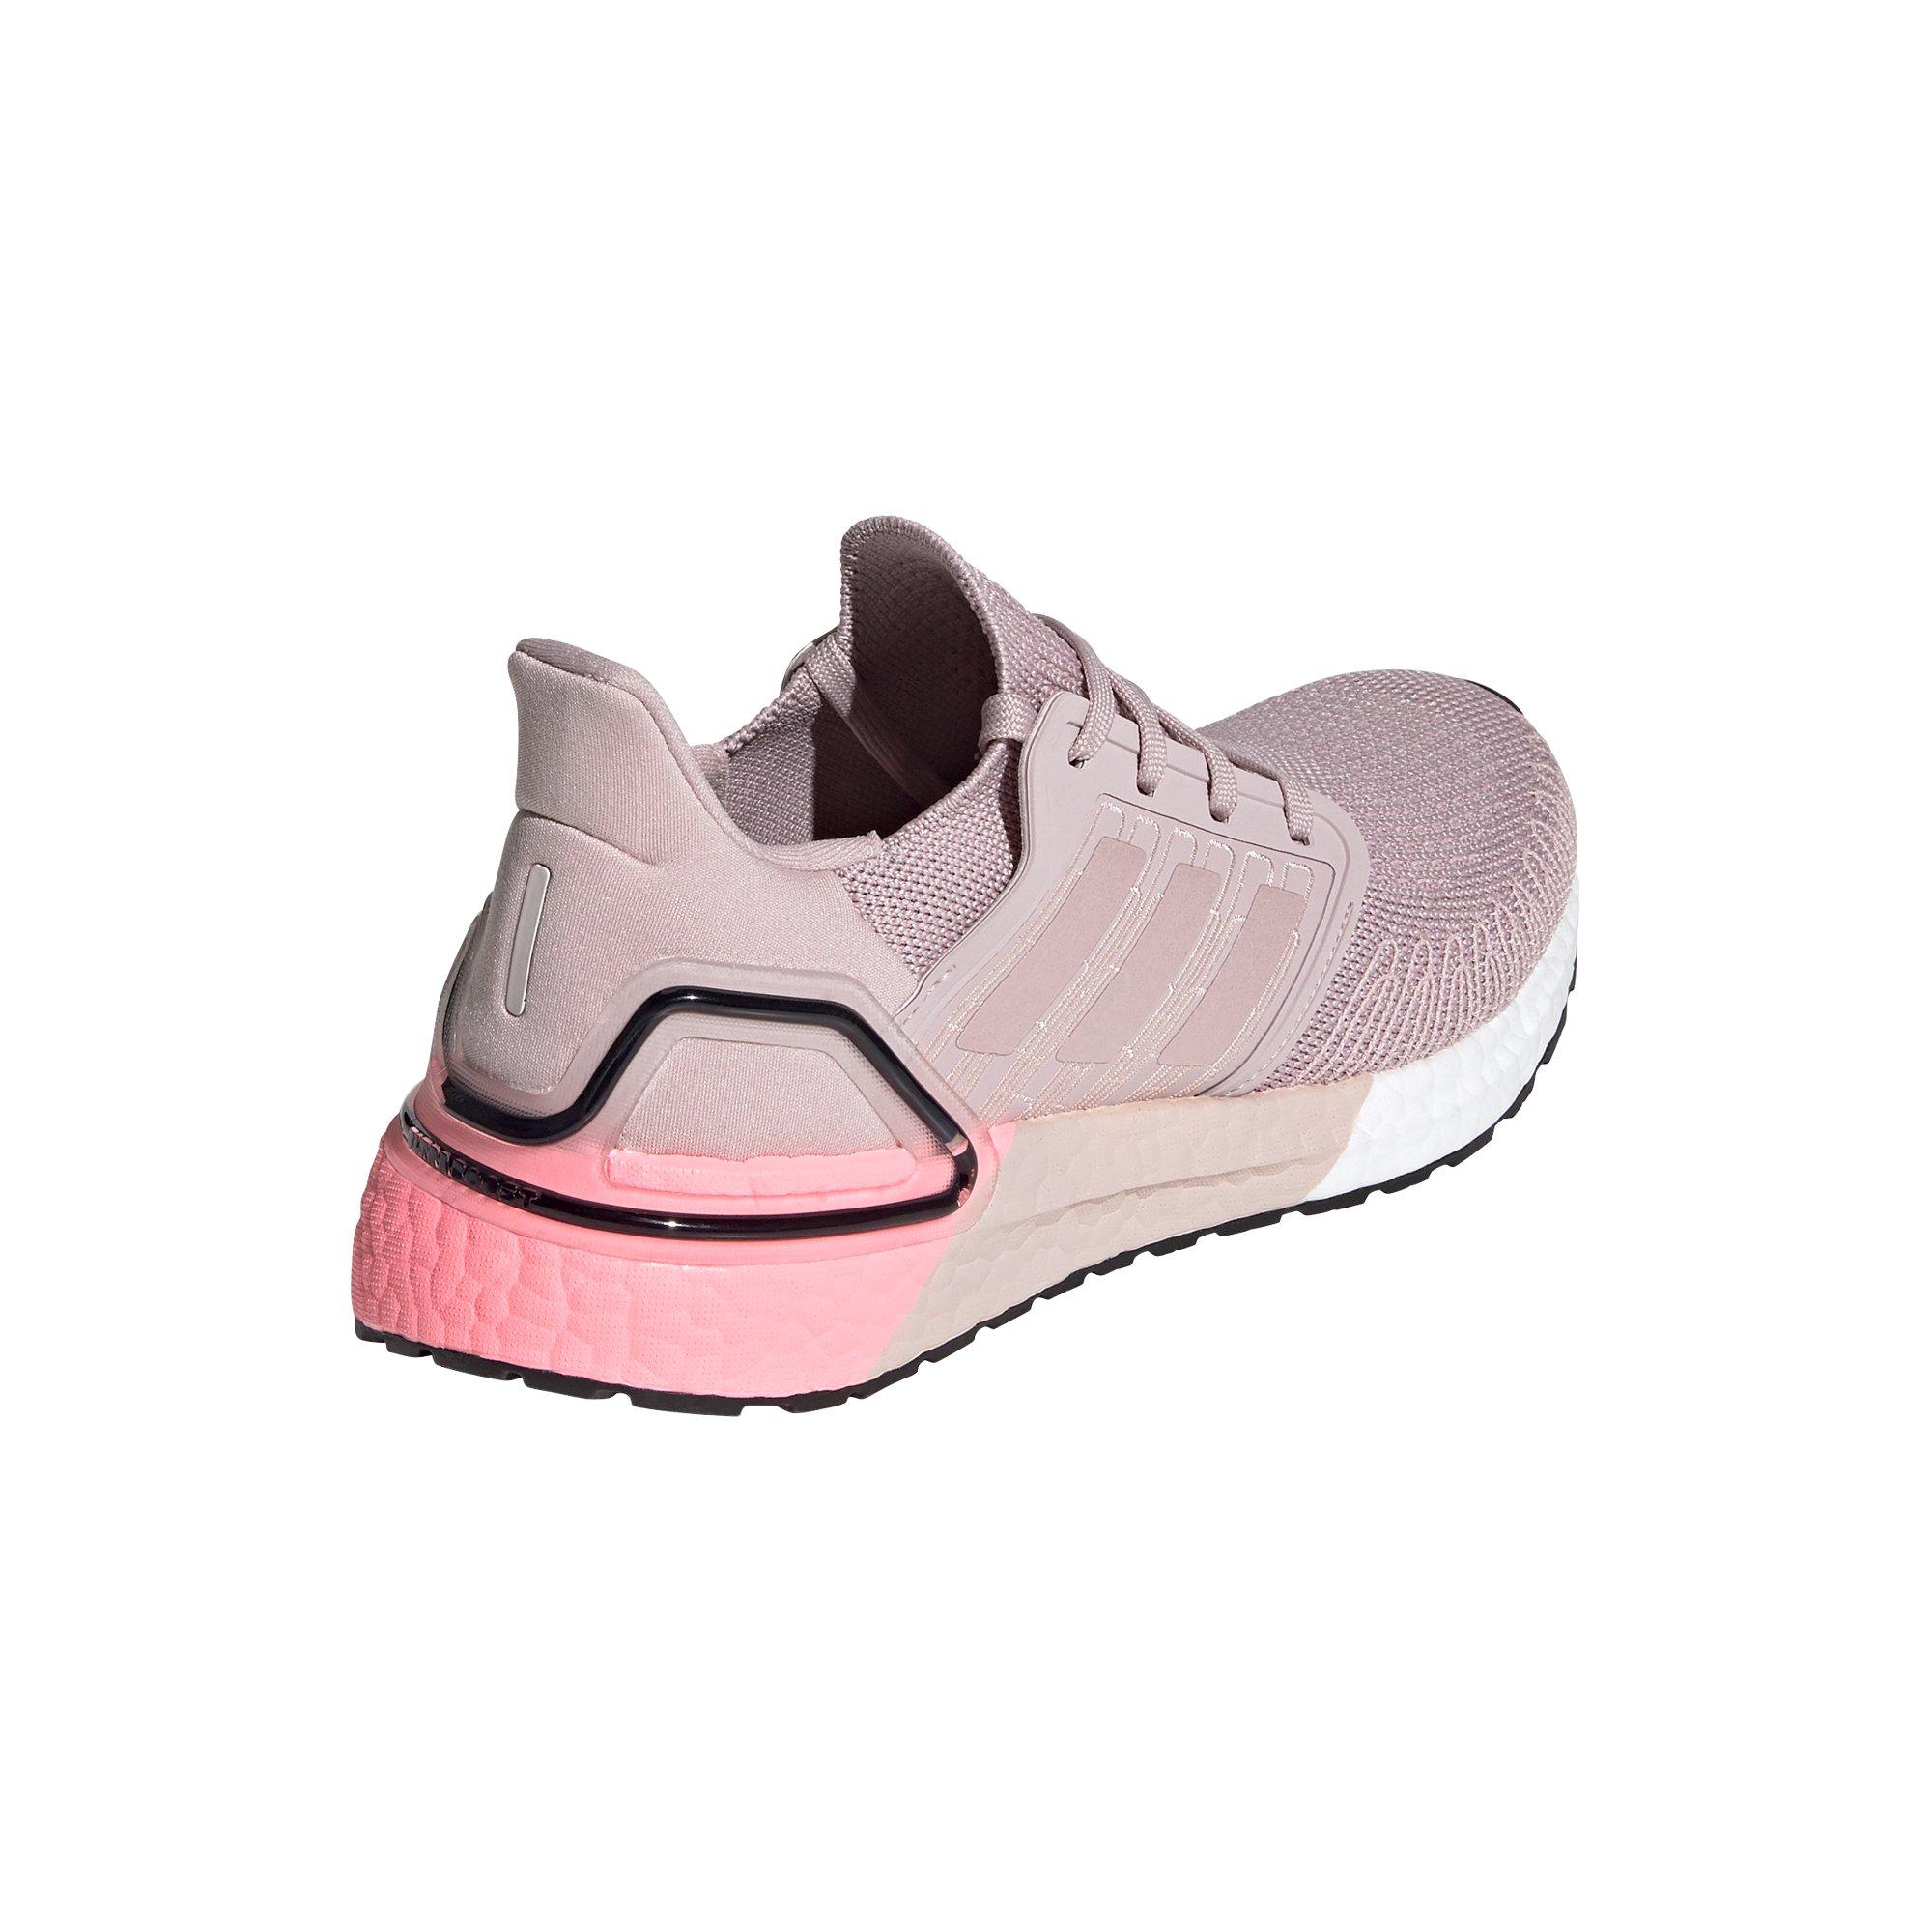 adidas women's ultraboost 20 running shoes rose